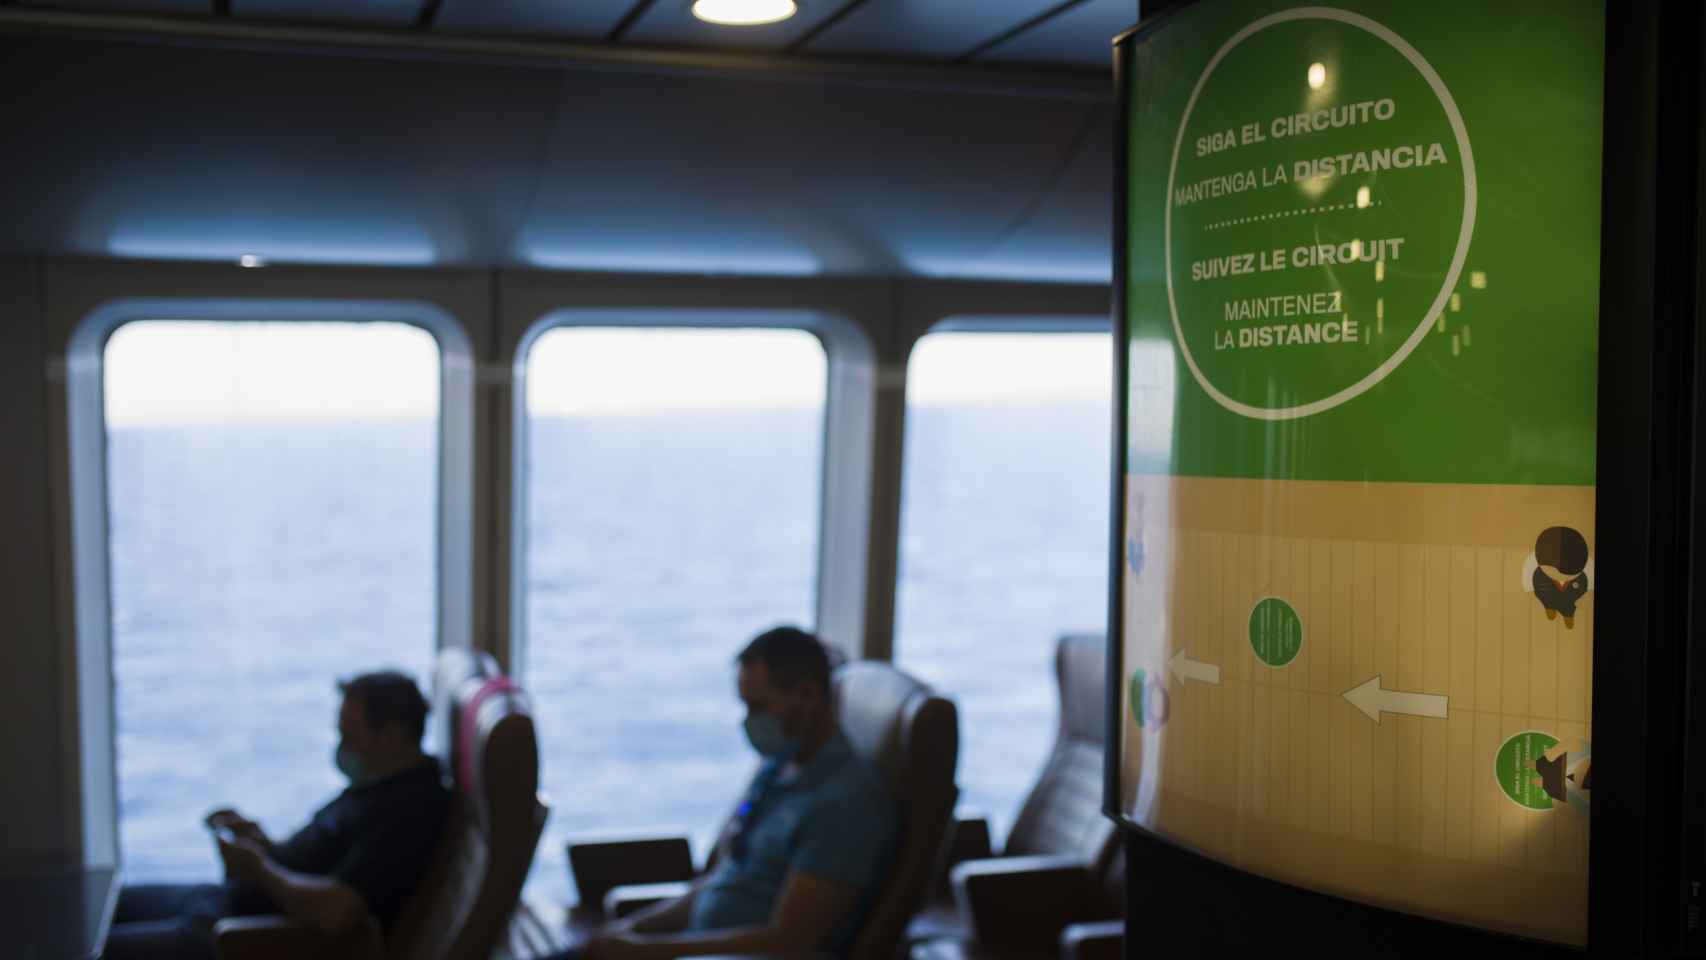 Panel informativo con medidas de seguridad en un ferry.